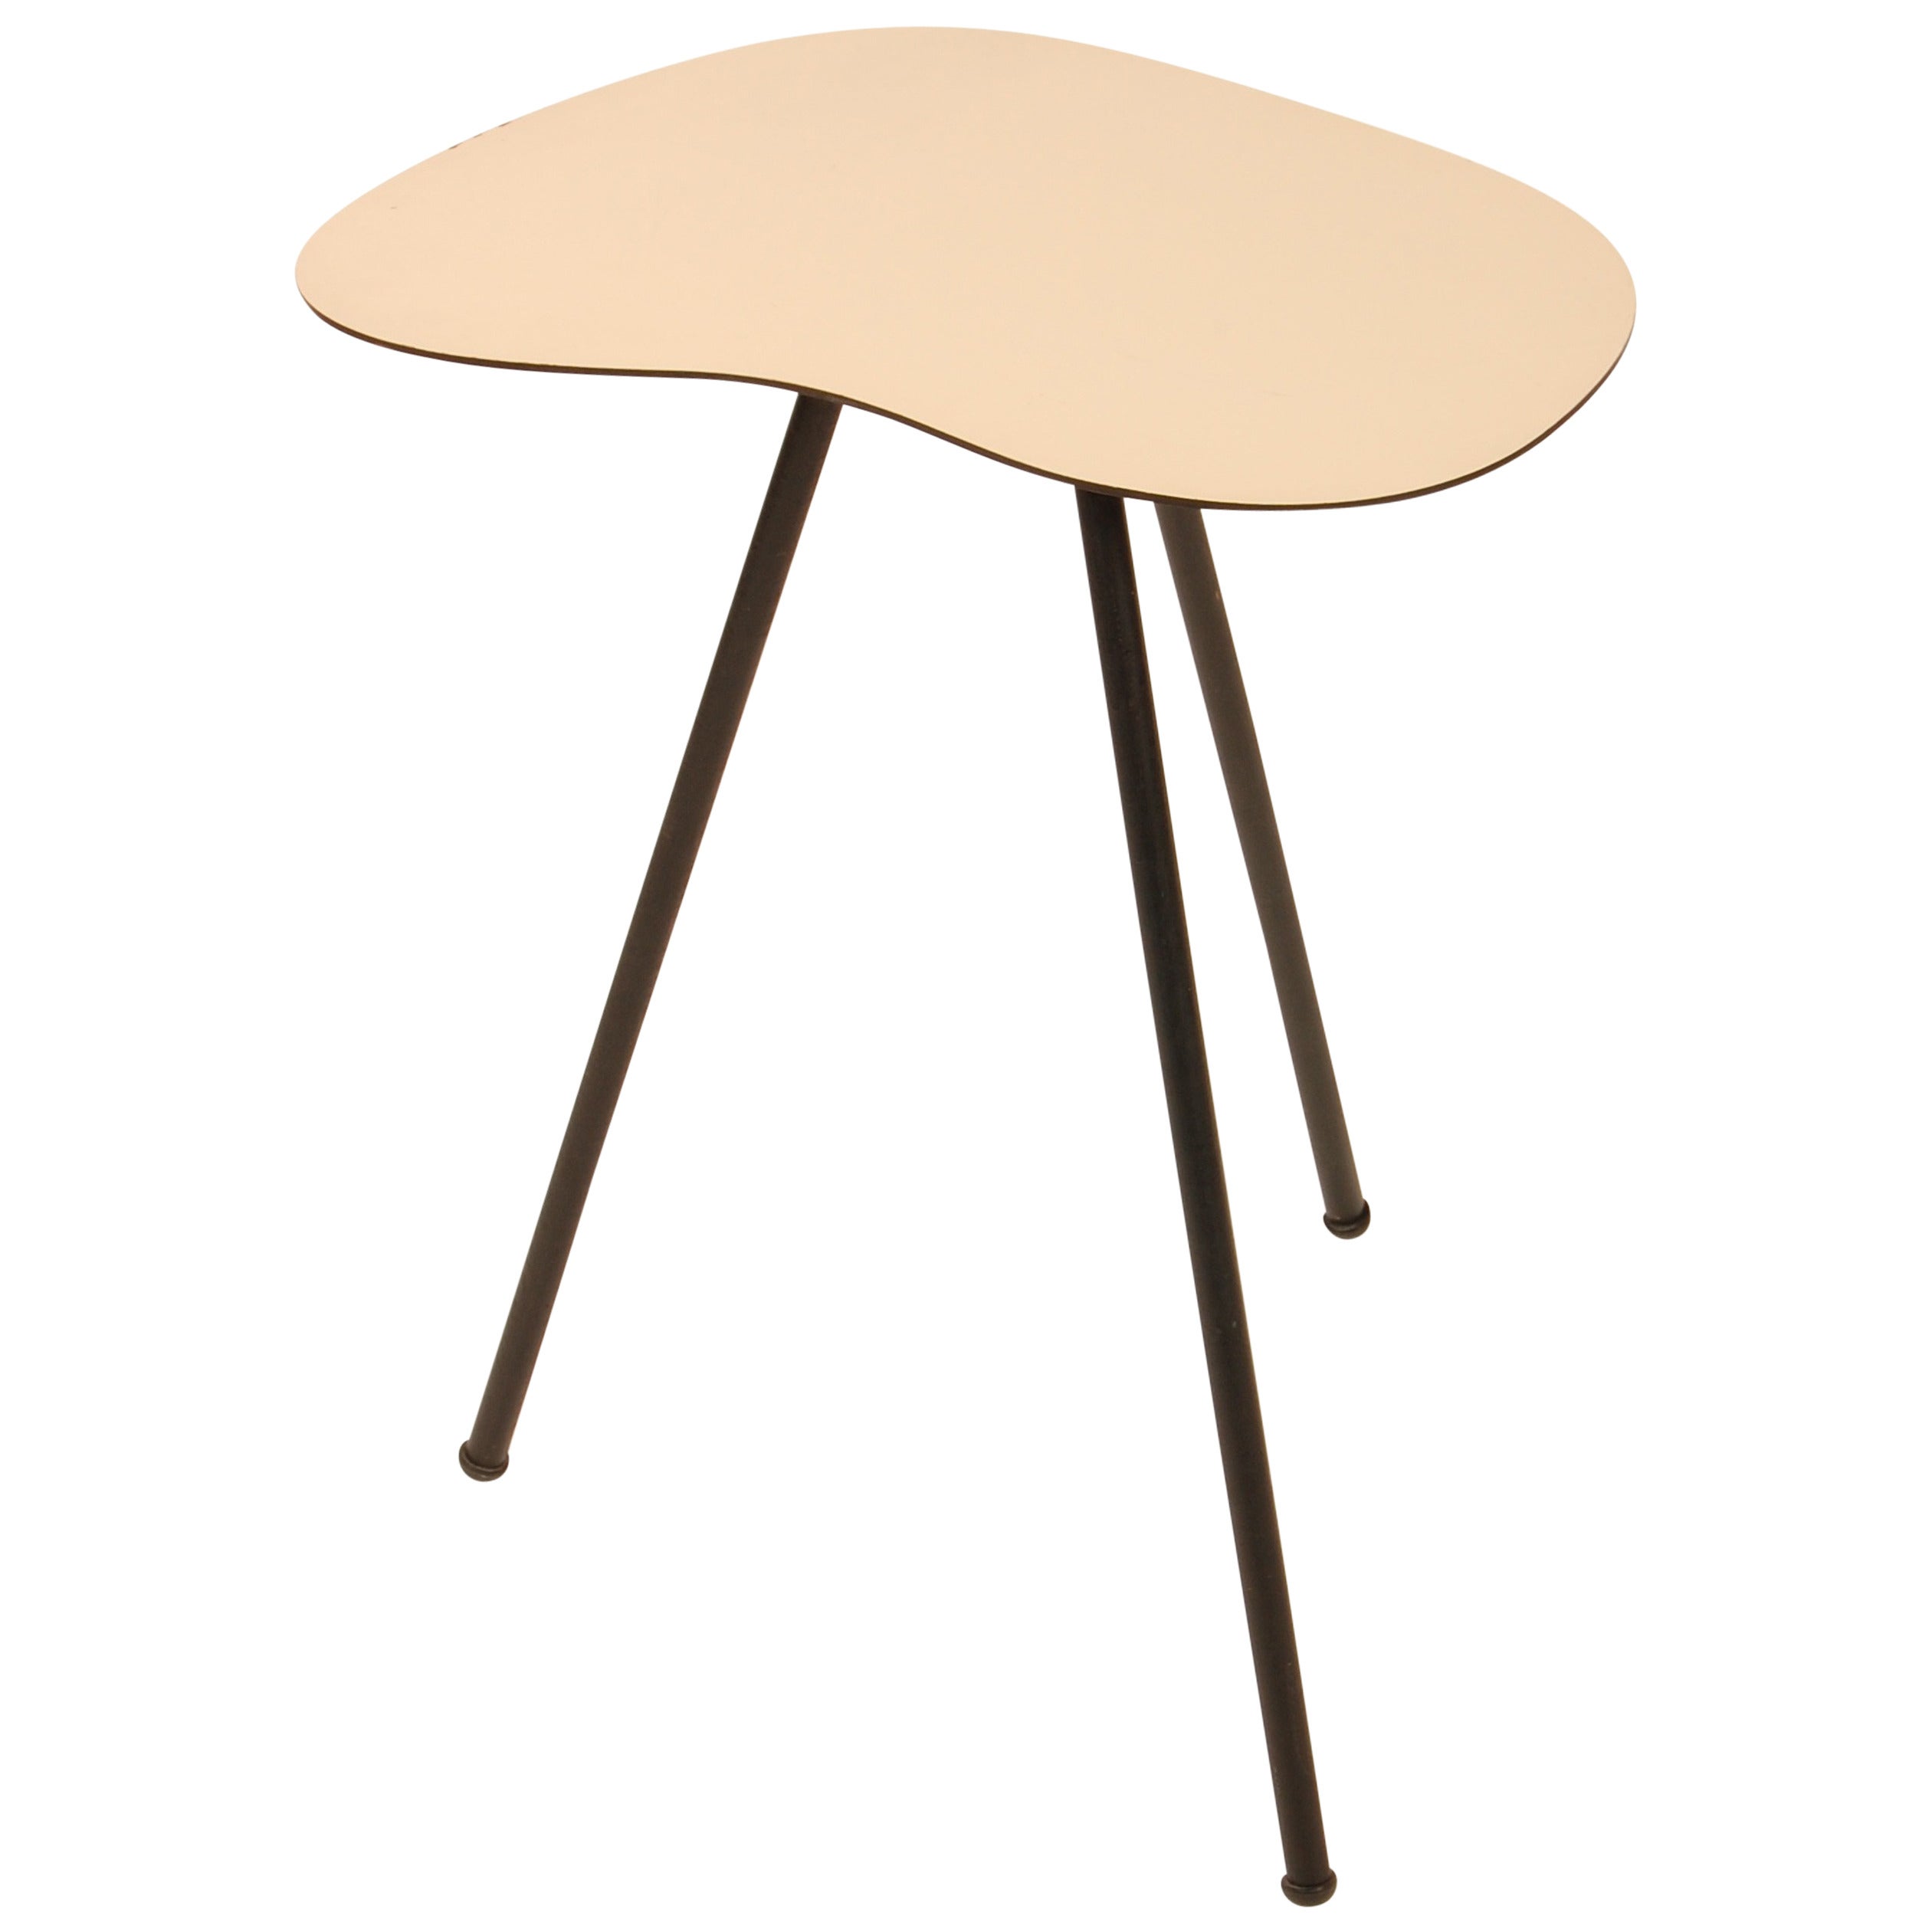 Free Form Modernist Side Table